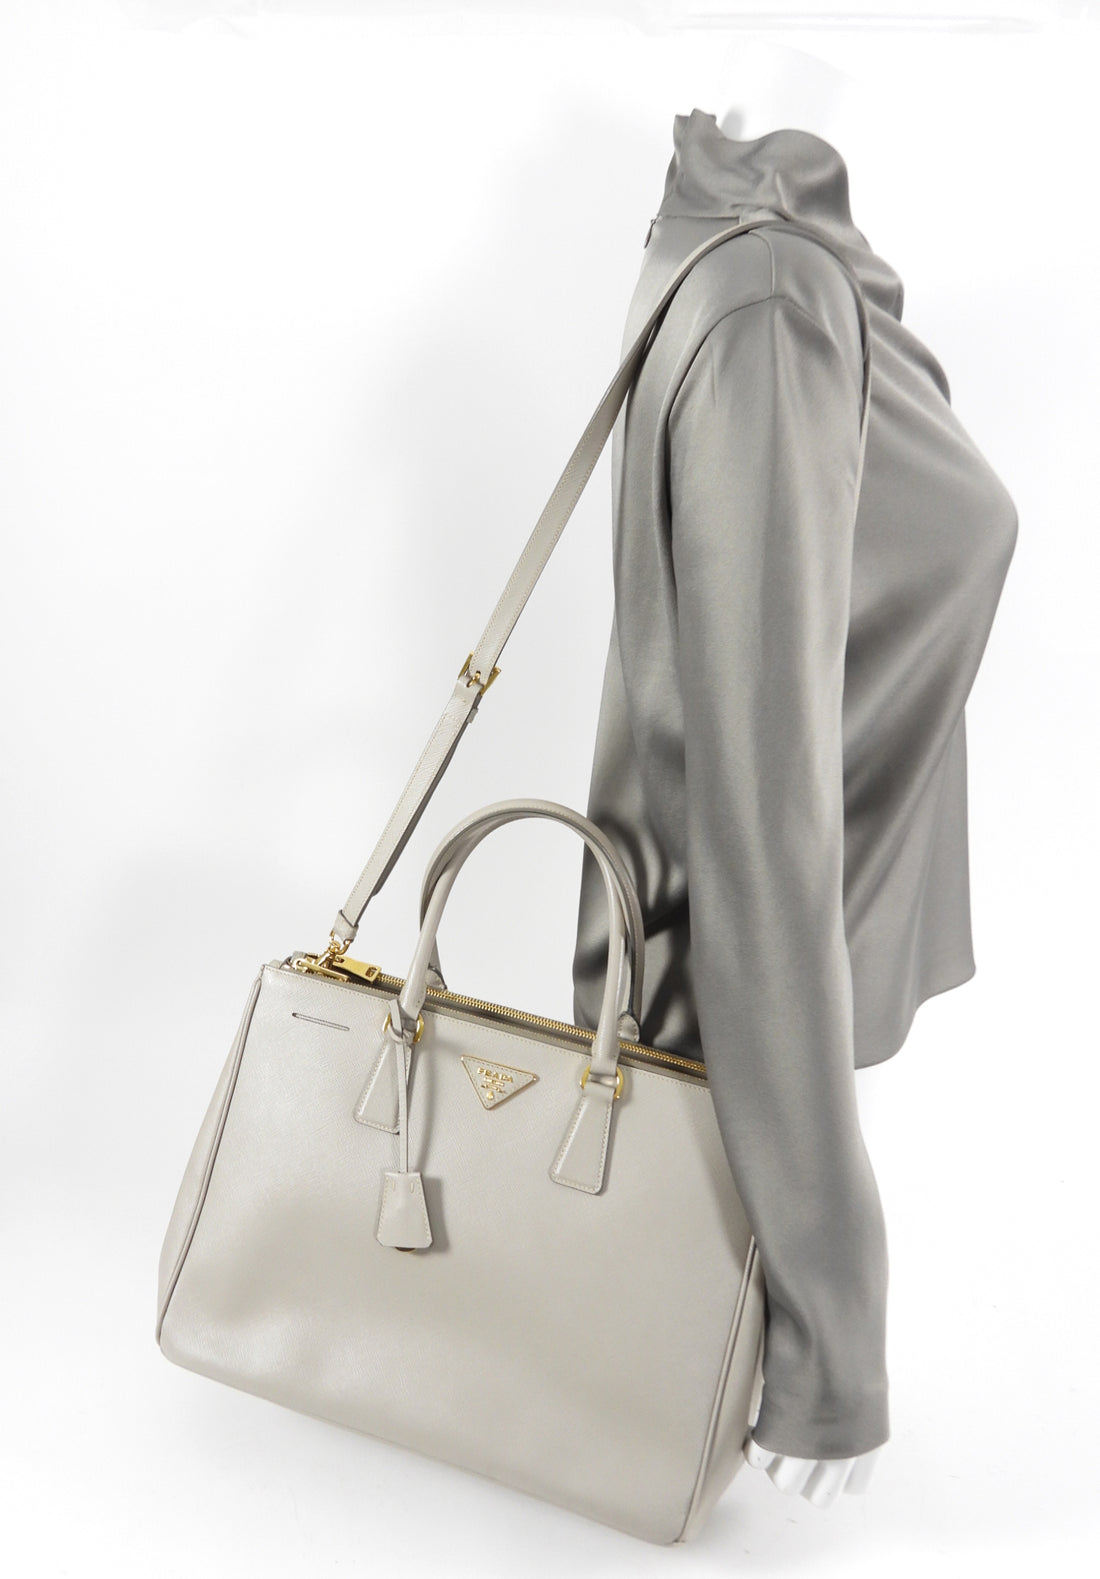 Prada Saffiano Lux Medium Galleria Double Zip Tote w/ Strap - Grey Totes,  Handbags - PRA867220